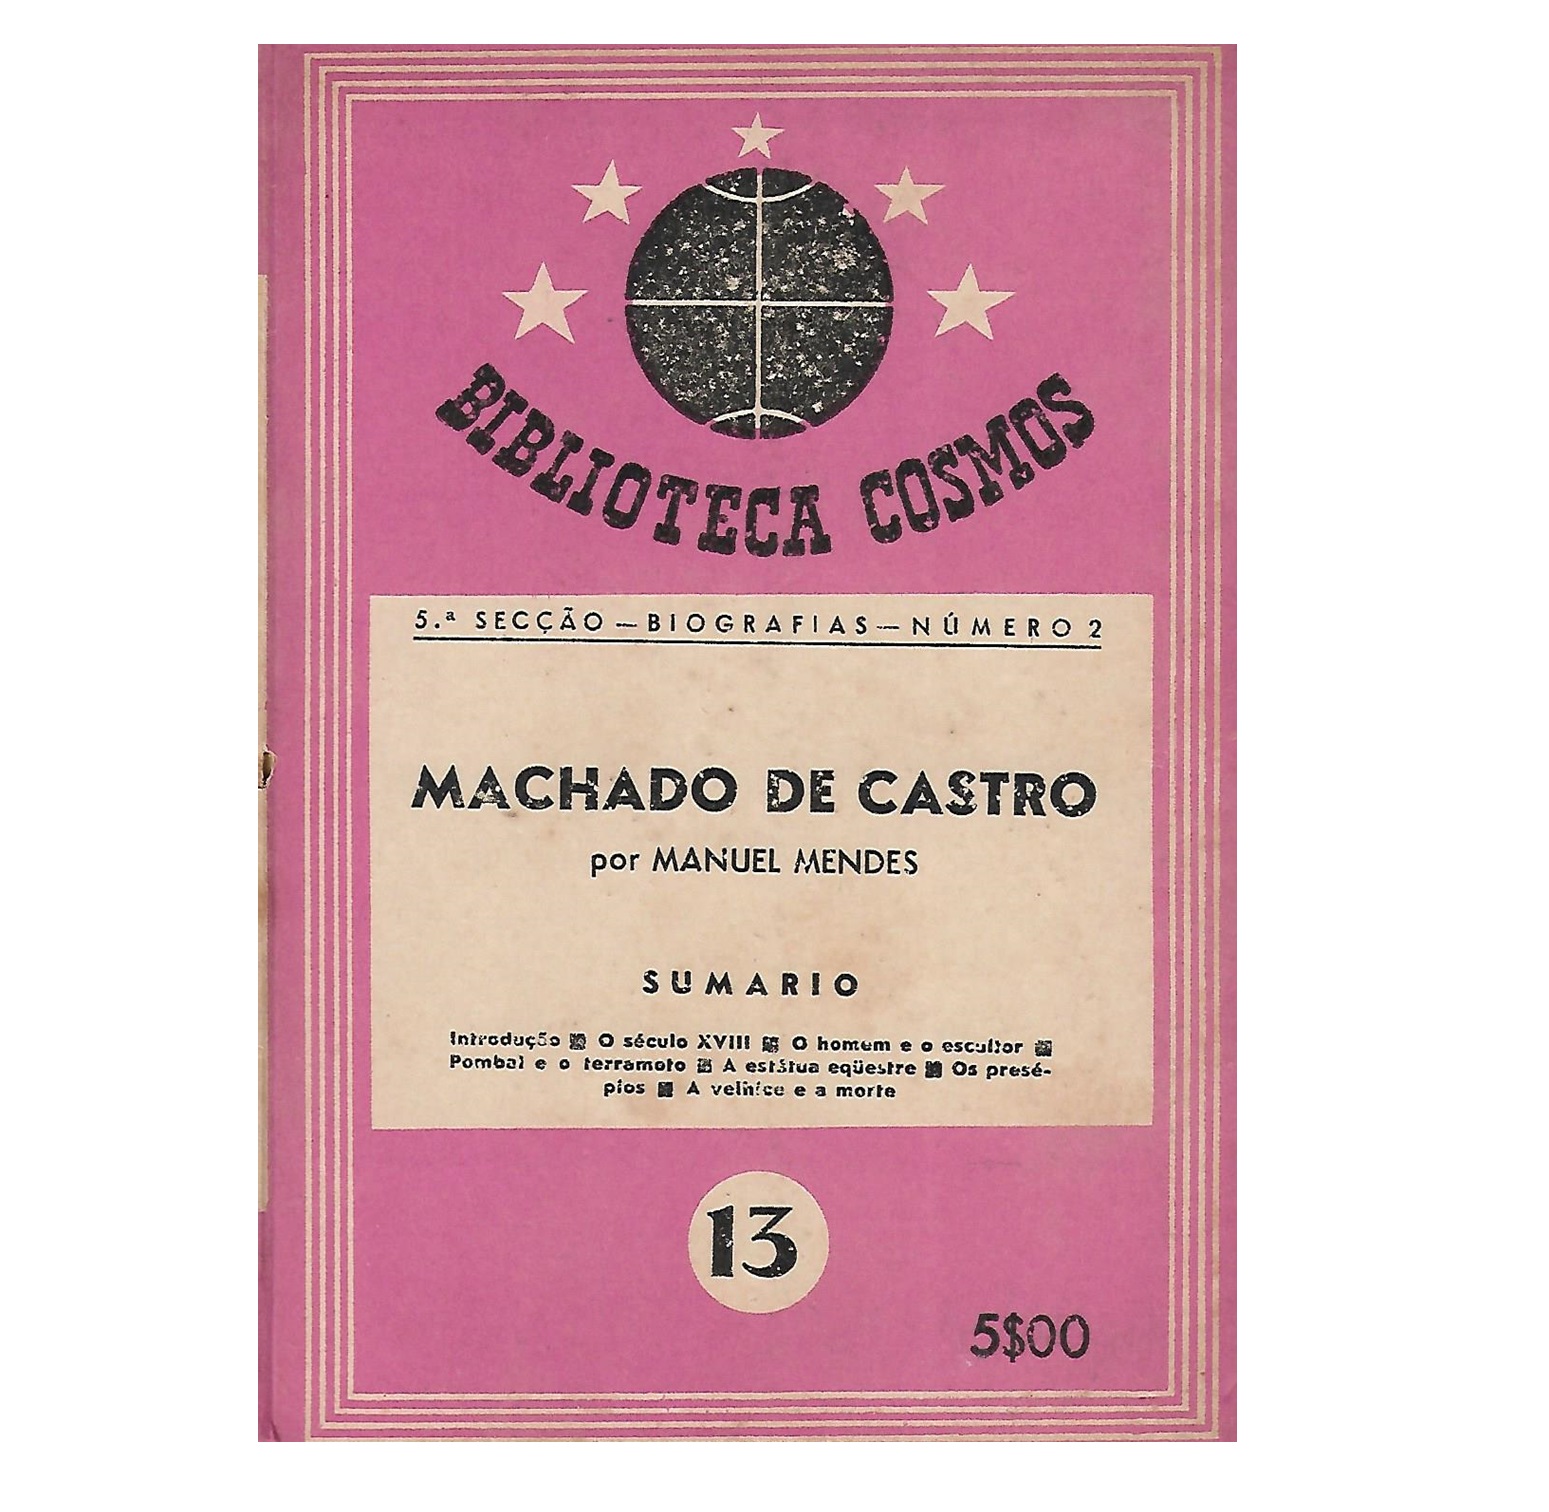  MACHADO DE CASTRO